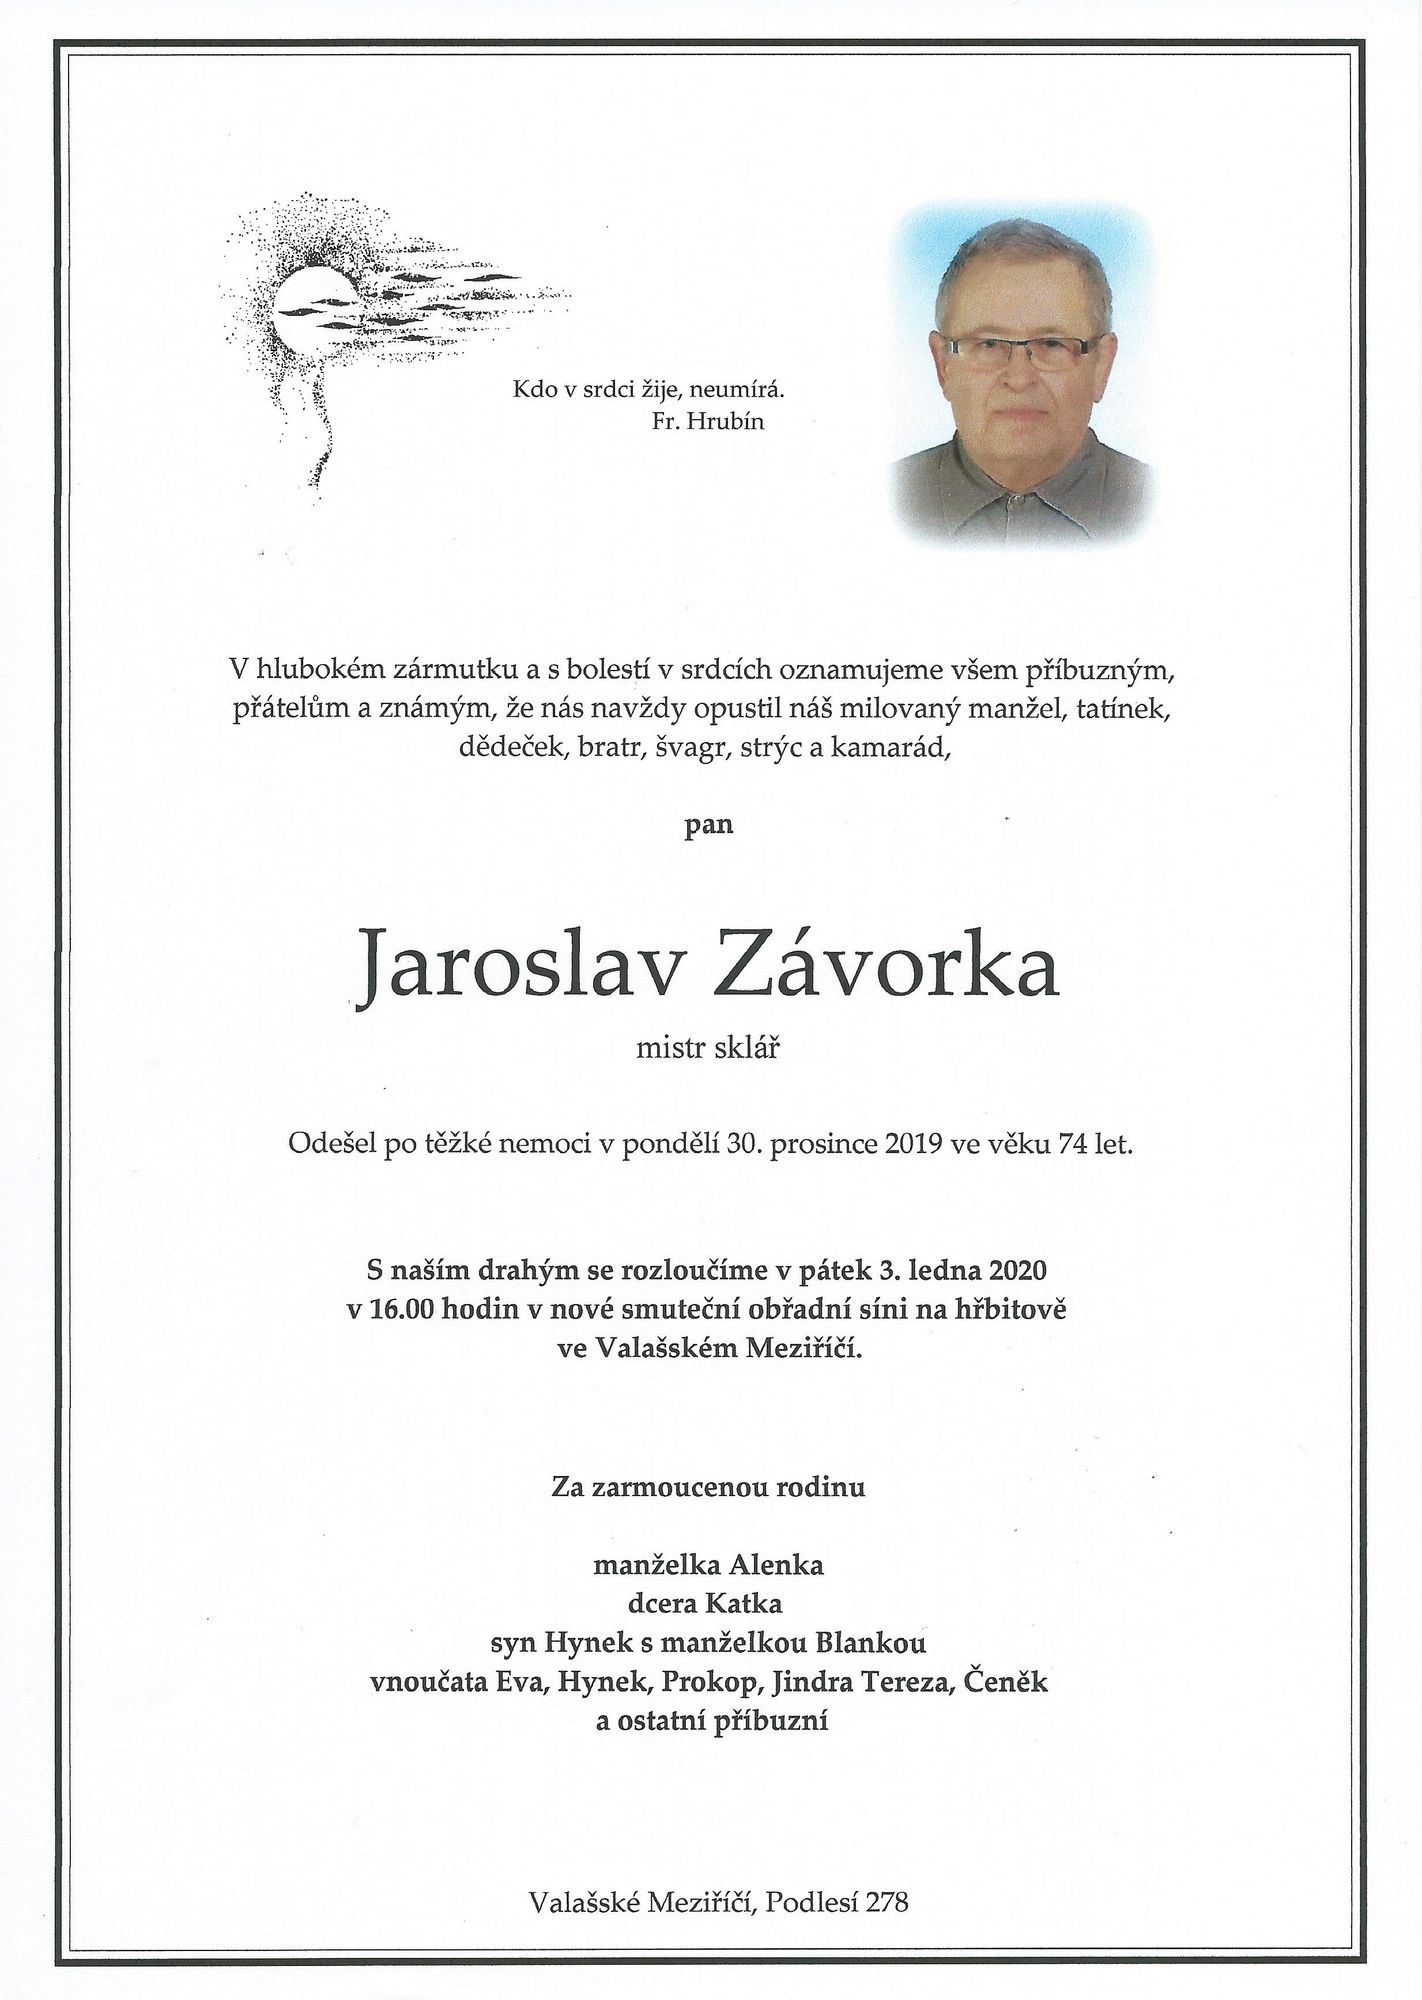 Jaroslav Závorka